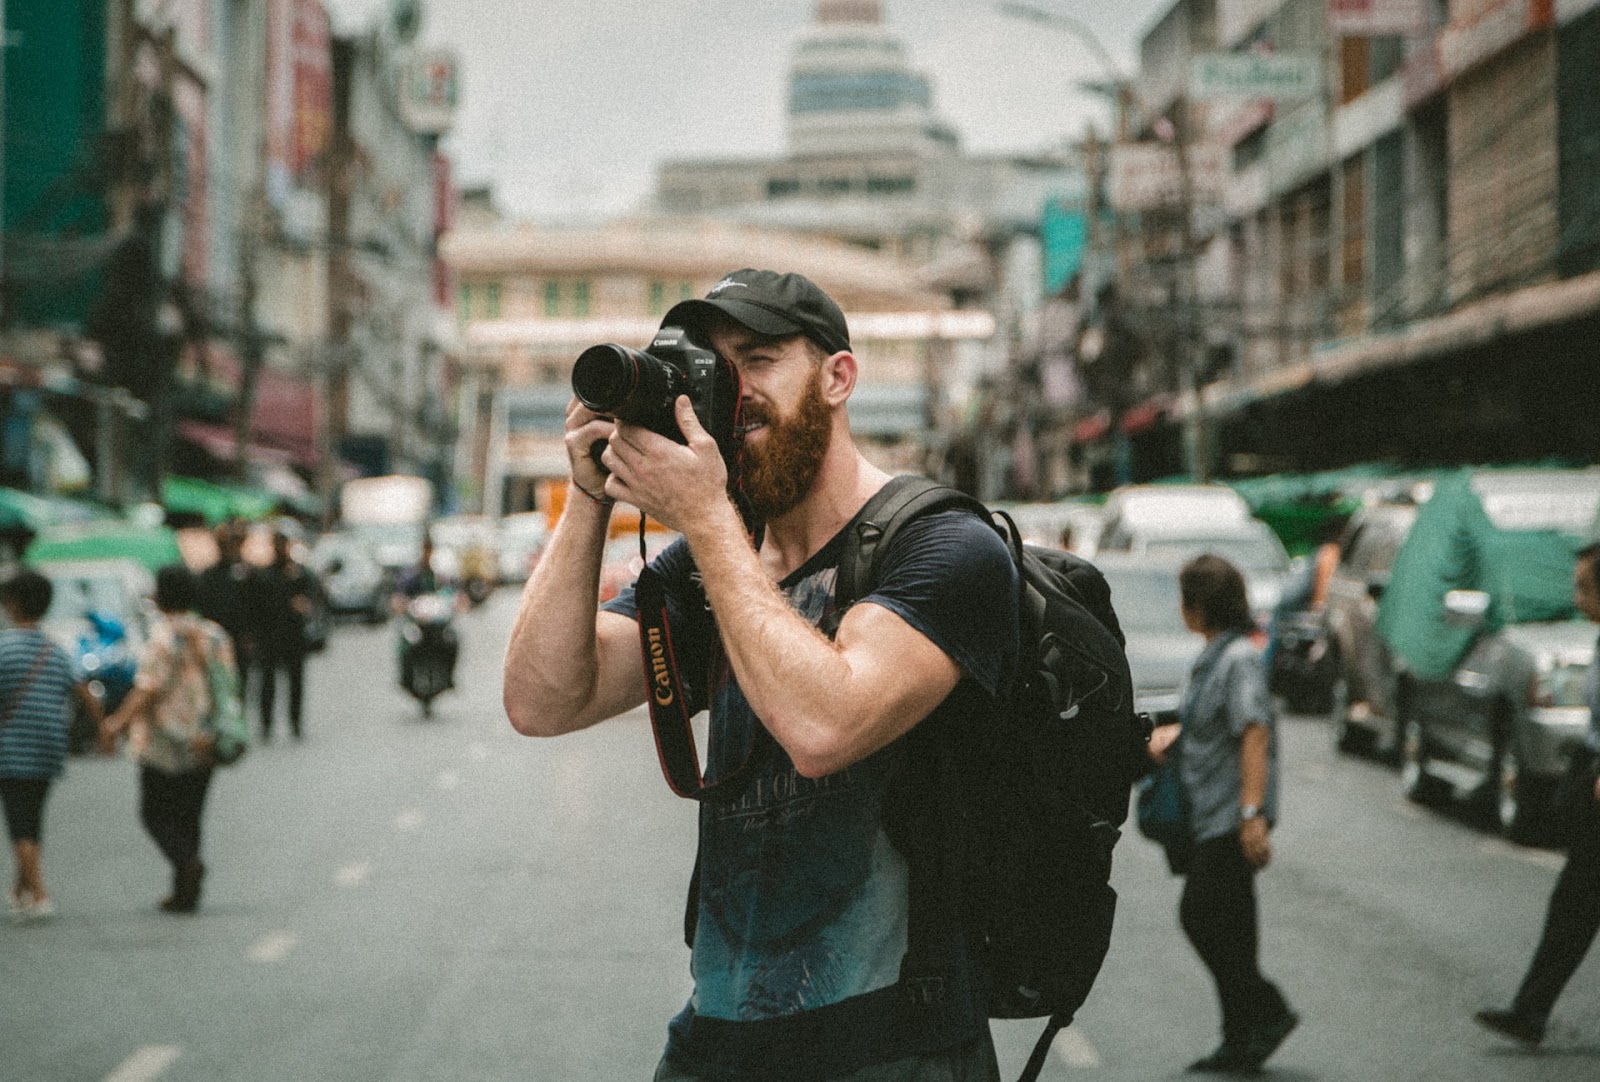 Profissionais de tecnologia e de criatividade, como fotógrafos, são os maiores adeptos ao nomadismo digital. Apesar disso, profissionais de diversas outras áreas podem ser nômades digitais.